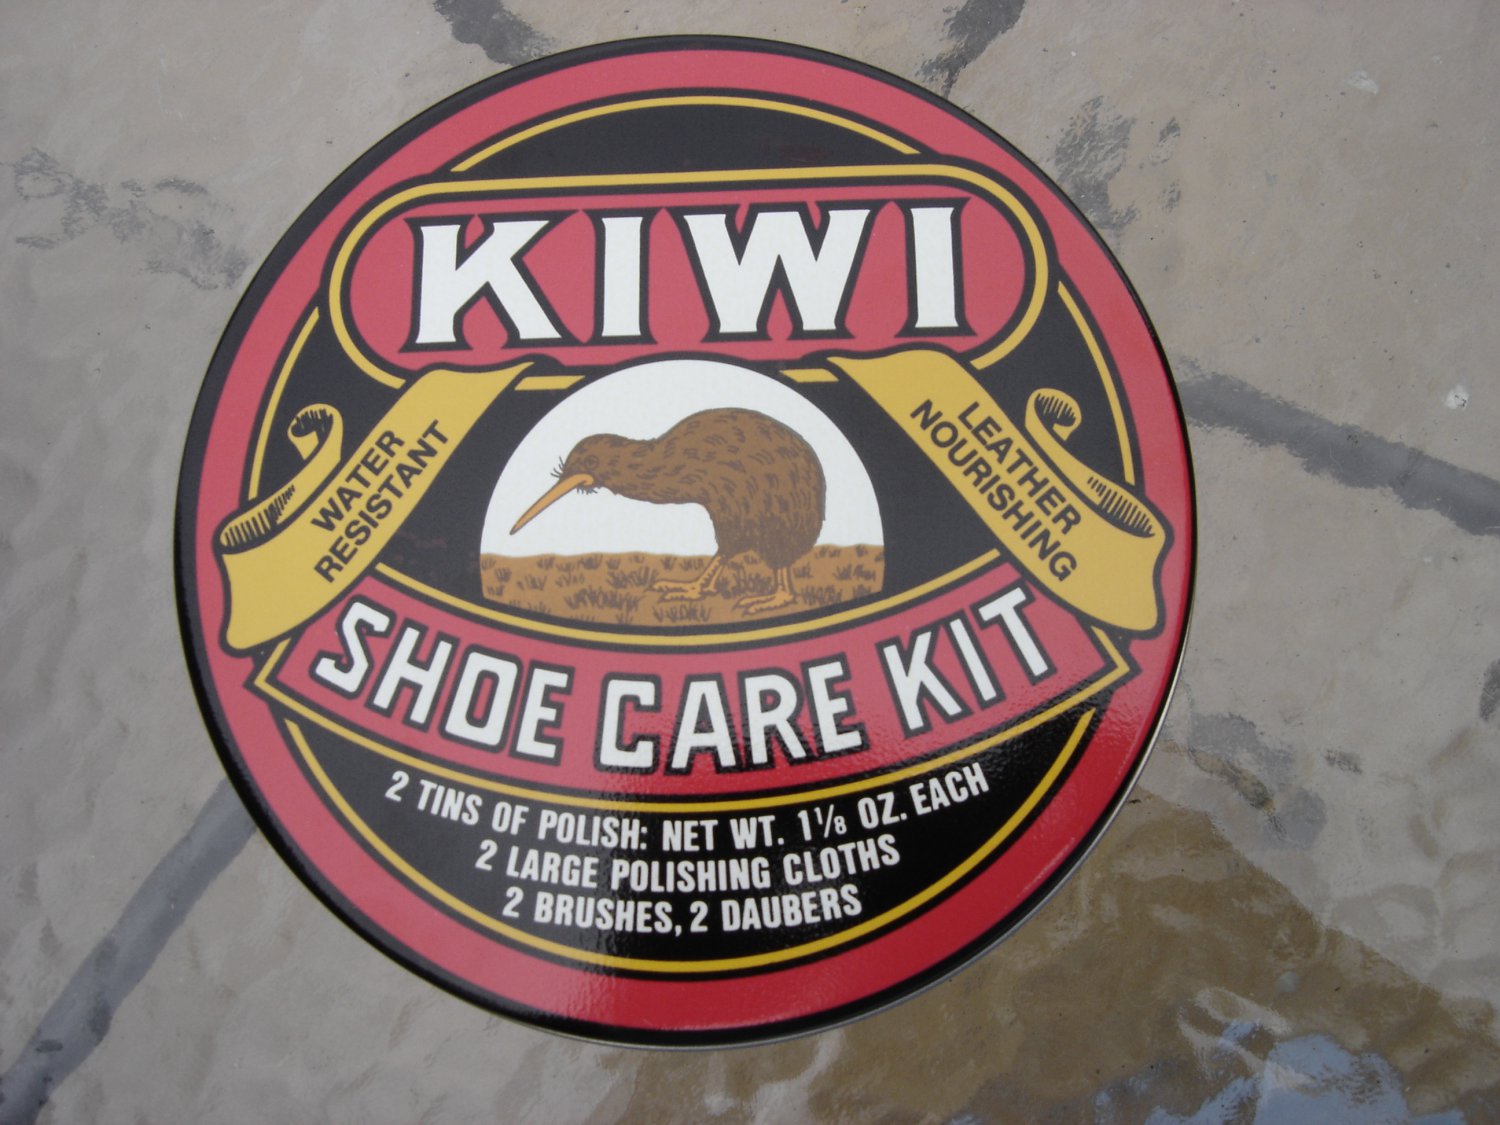 kiwi shoe care kit